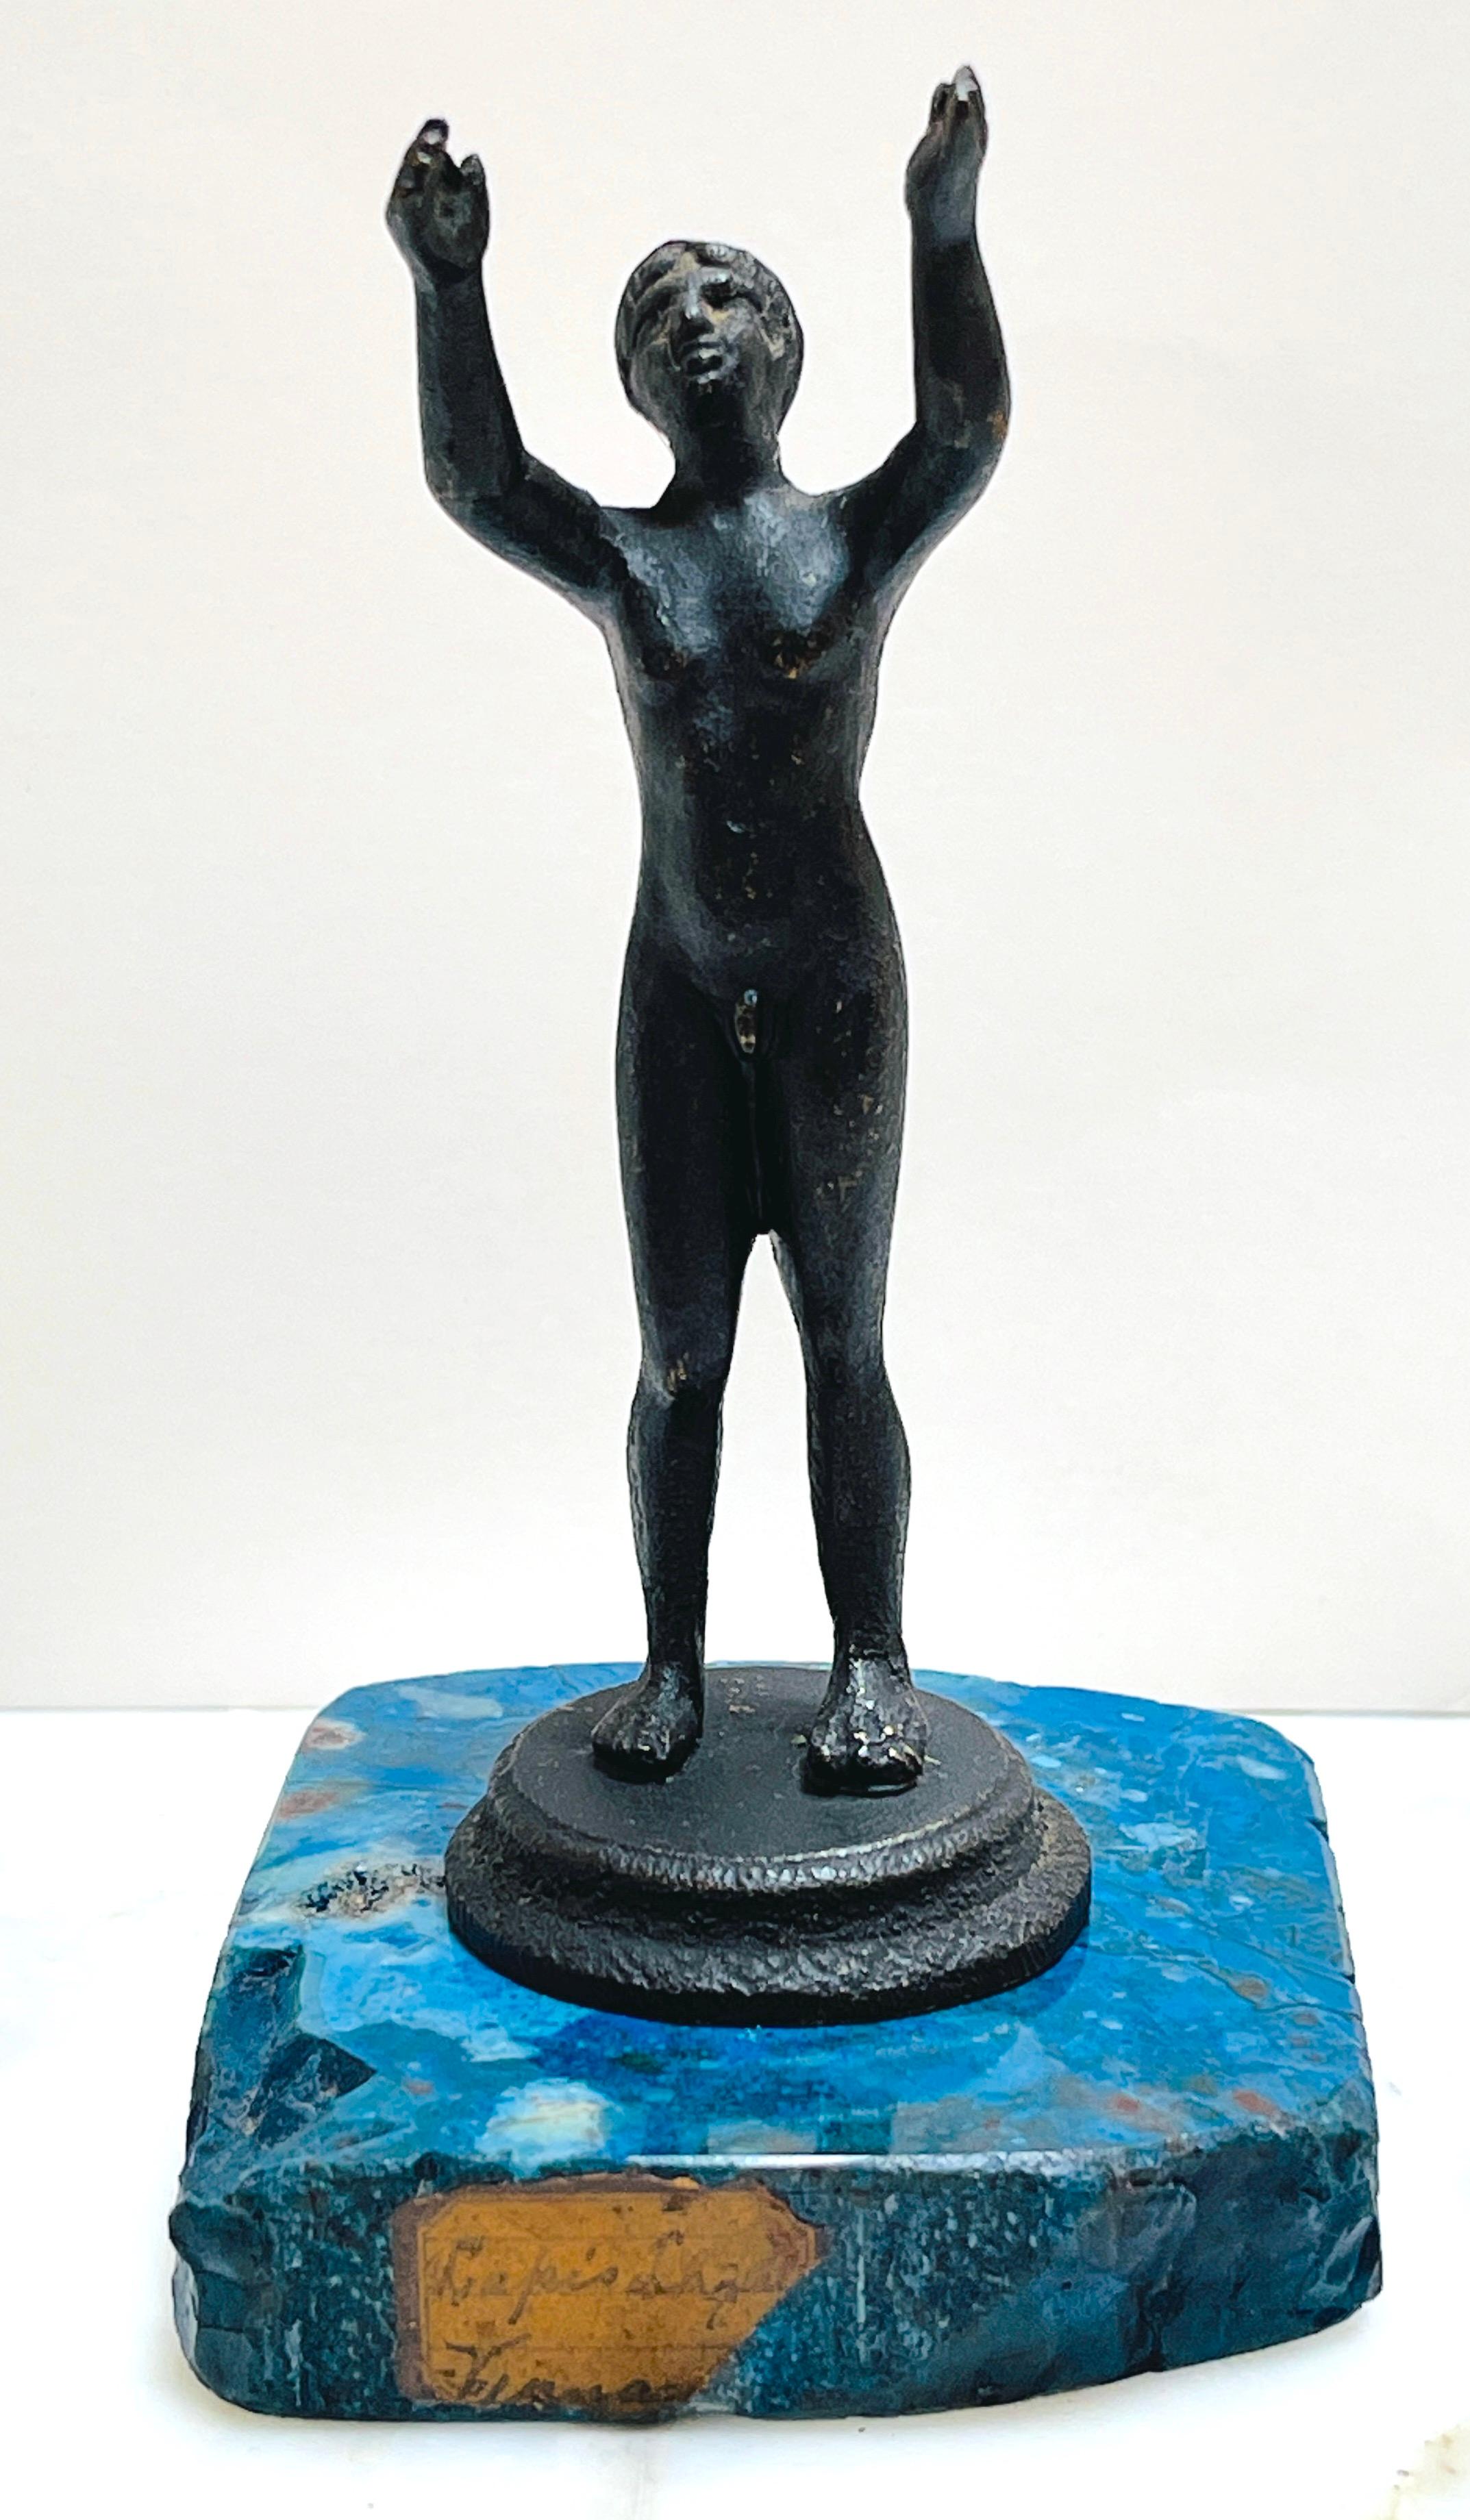 19. Jahrhundert Italienisch Diminutive Grand Tour Bronze Akt Athlet auf Lapis-Lazuli Basis
Italien, zugeschriebene Gießerei in Neapel, um 1875
Diese italienische Bronzeskulptur aus dem 19. Jahrhundert, die der Gießerei in Neapel zugeschrieben wird,